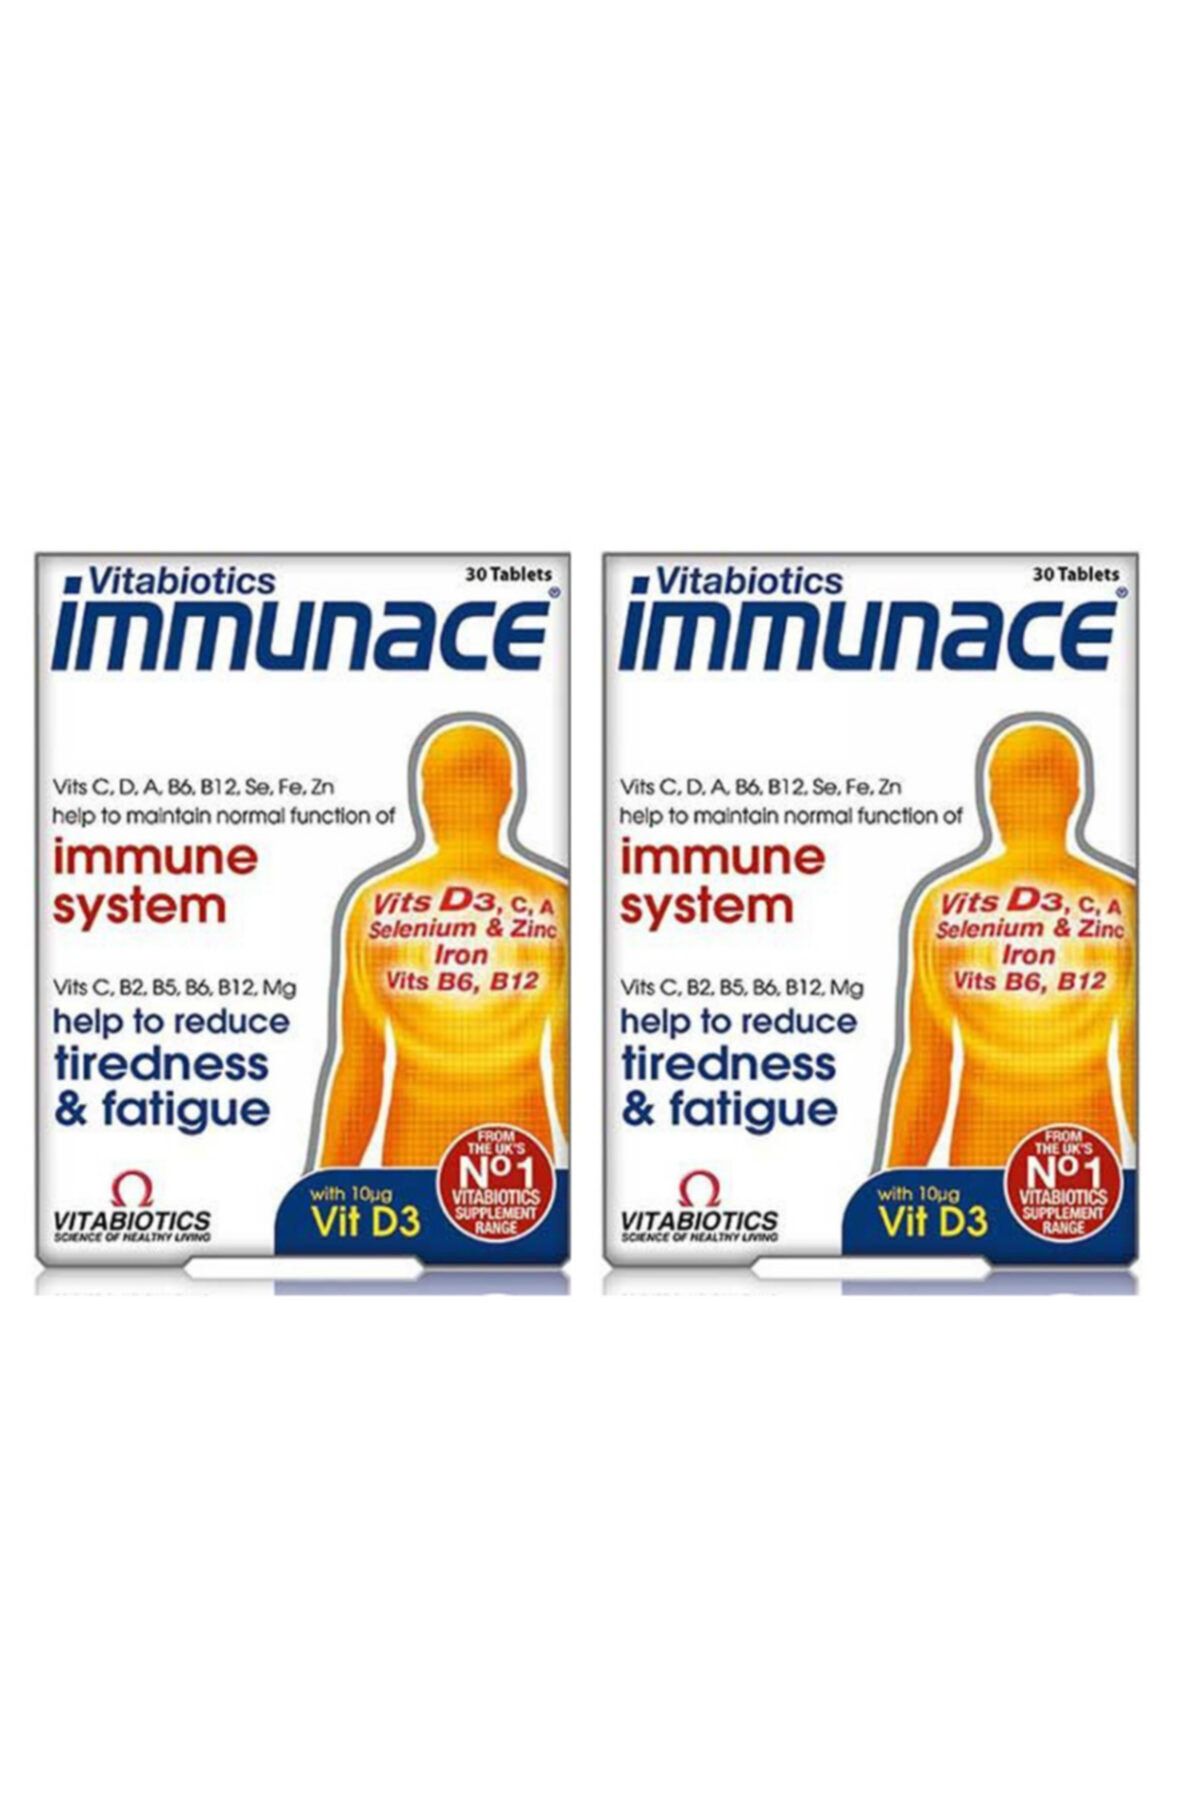 Immunace Vitabiotics Immunace Immune System 30 Tablet 2'li